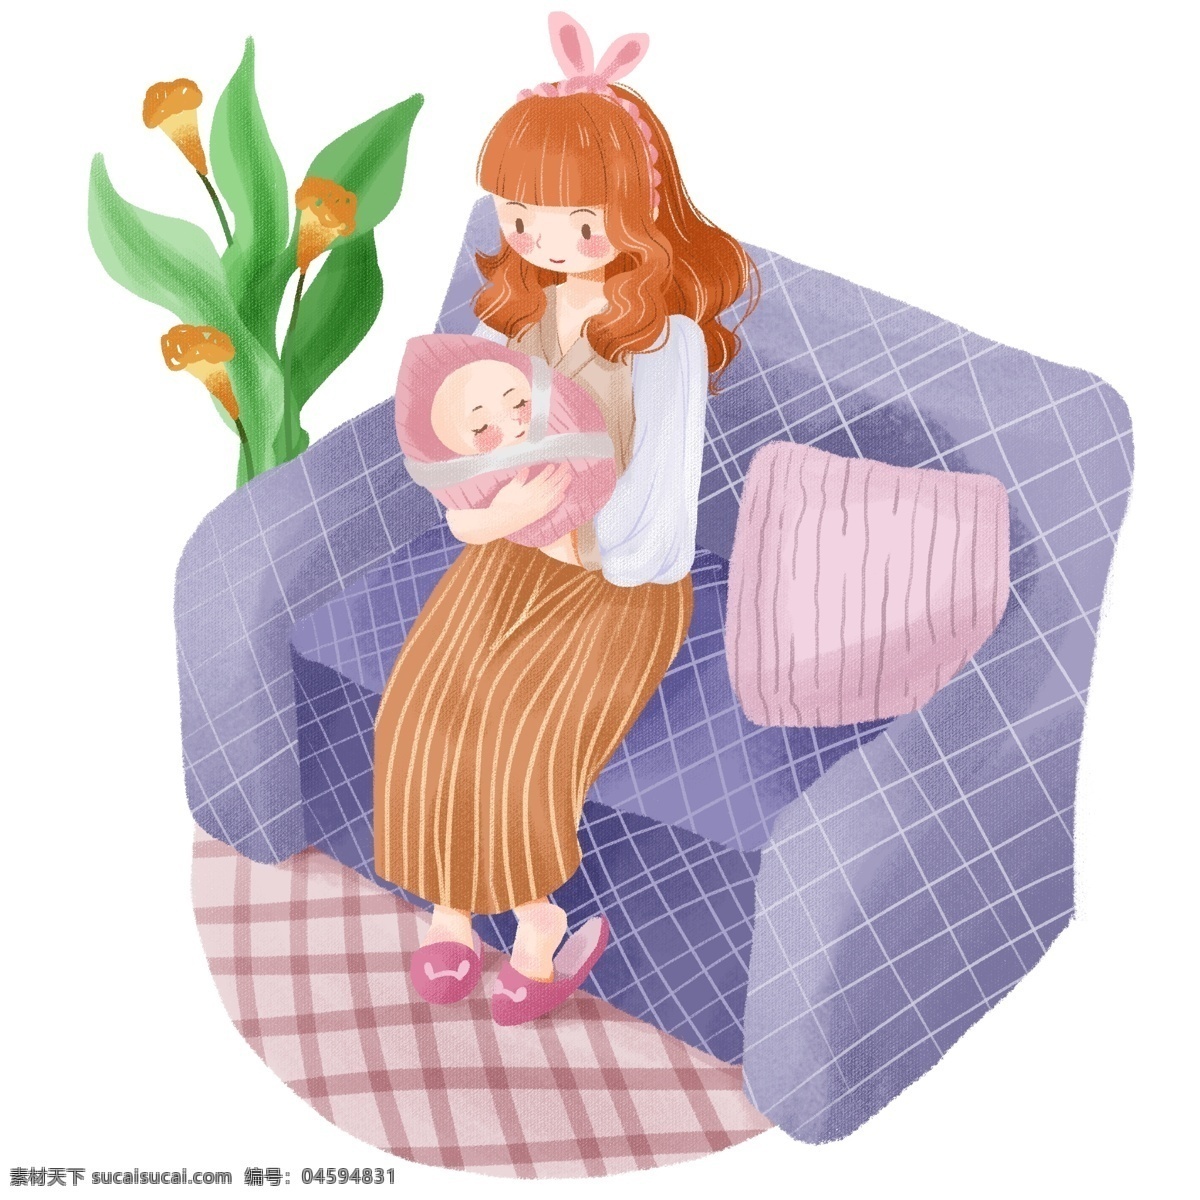 手绘 卡通 母亲节 母亲 孩子 温馨 场景 婴儿 家庭 沙发 绿植 地毯 亲情 母爱